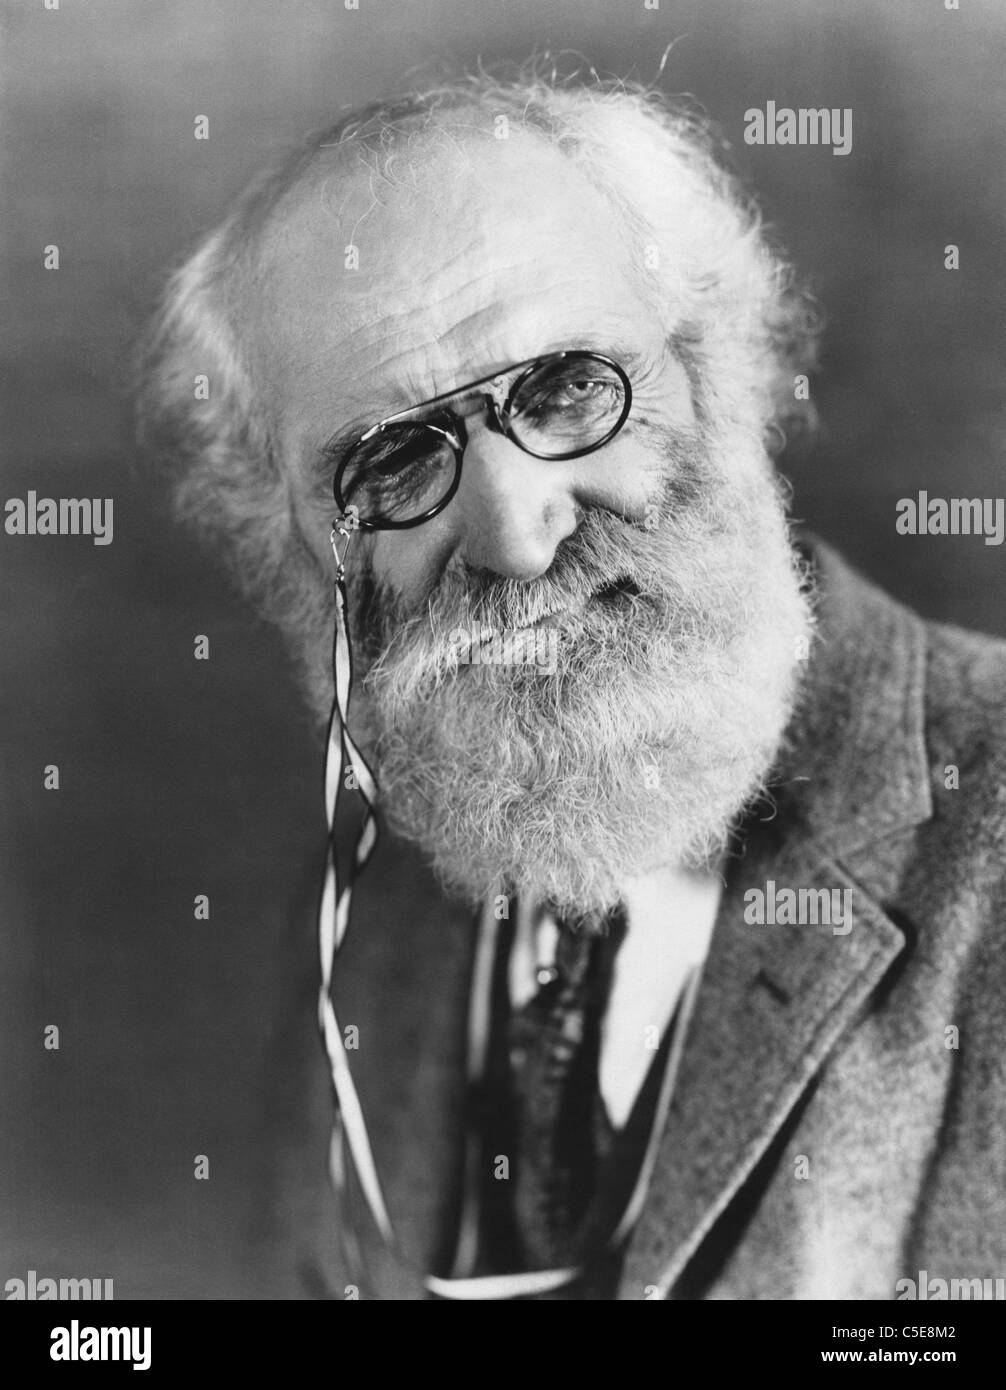 Bearded man with pince-nez Stock Photo - Alamy